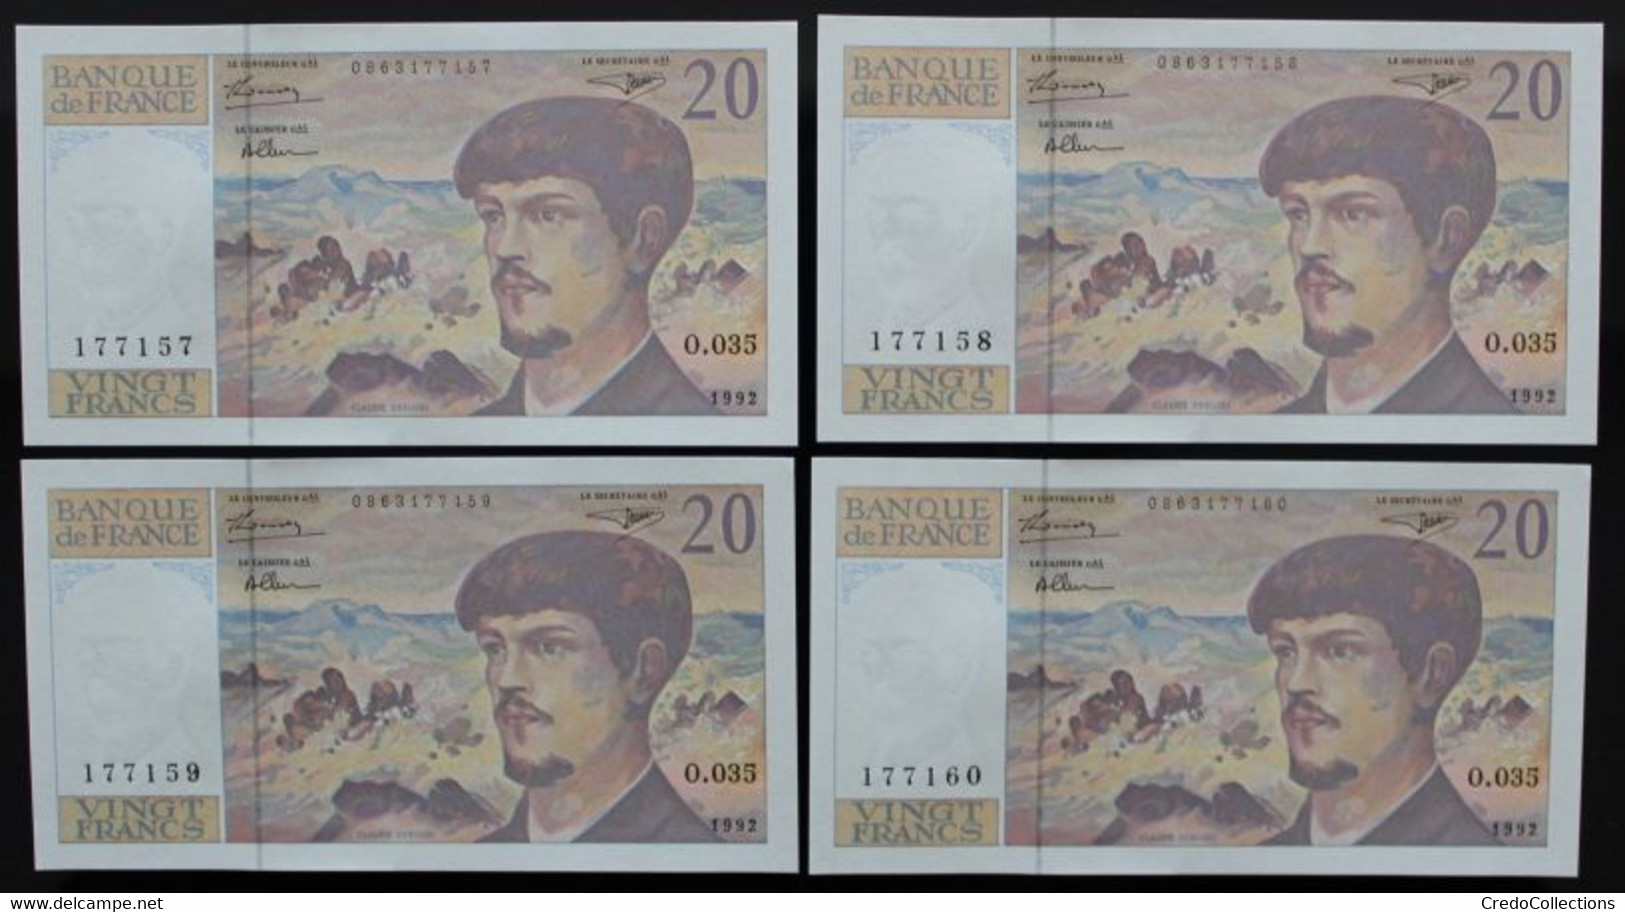 France - 20 Francs - 1992 - PICK 151f.1 / F66bis.3 - NEUF (10 billets)